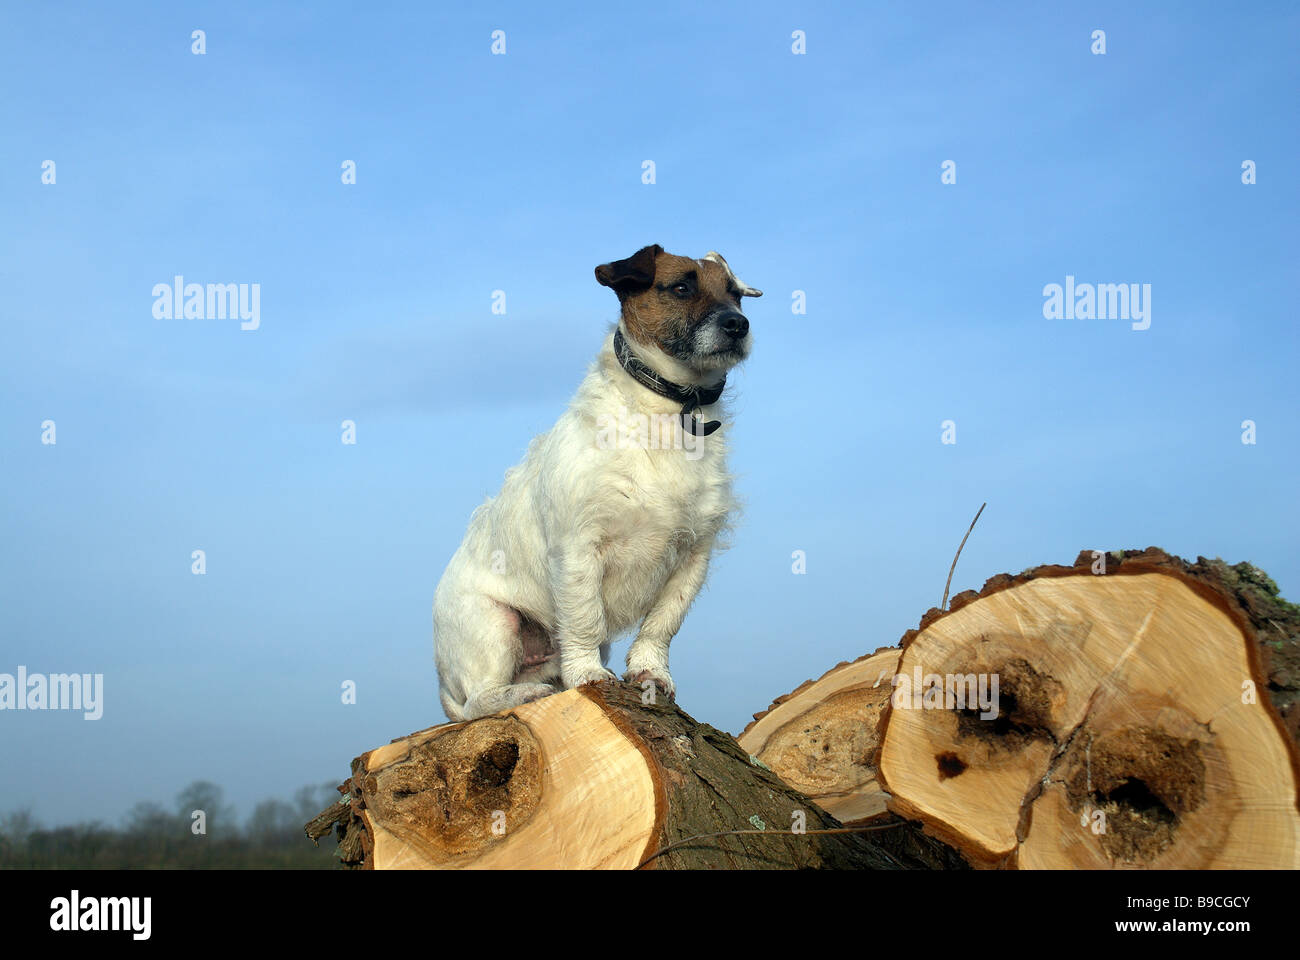 Magnifico ,orgulloso noble perro Jack Russell en árbol caído Foto de stock